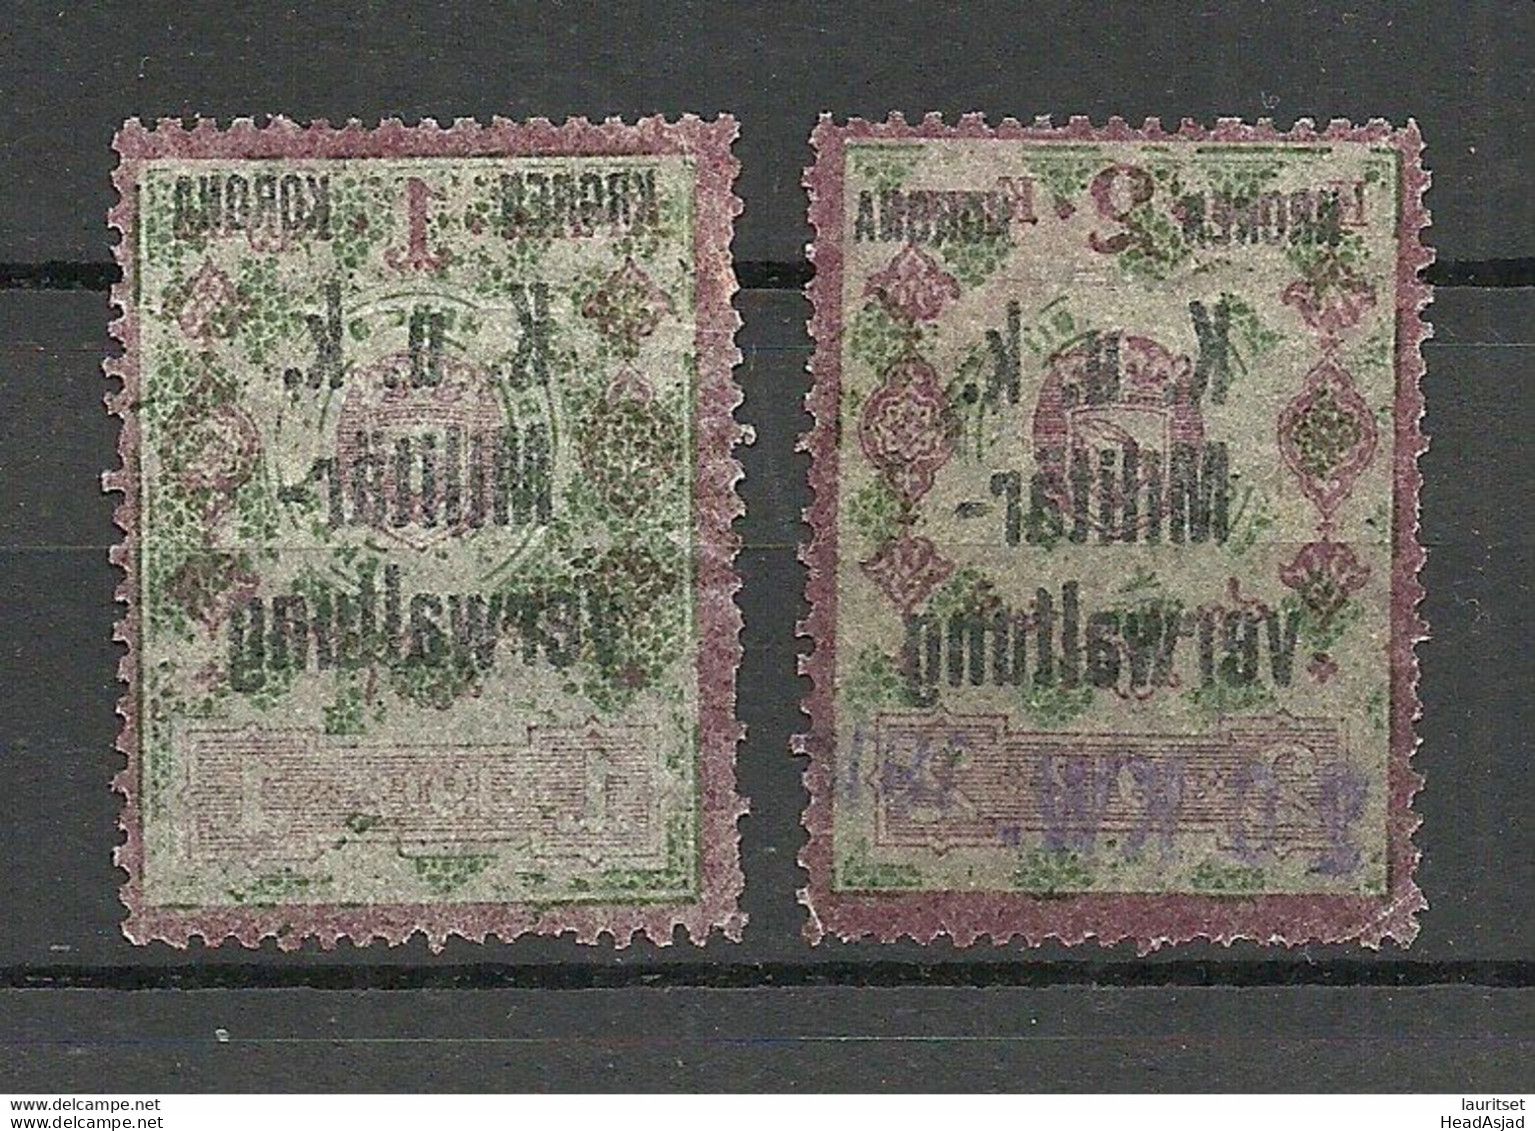 Österreich AUSTRIA K. U K. 1912 Militärverwaltung Revenue Tax Steuermarken  O - Fiscale Zegels